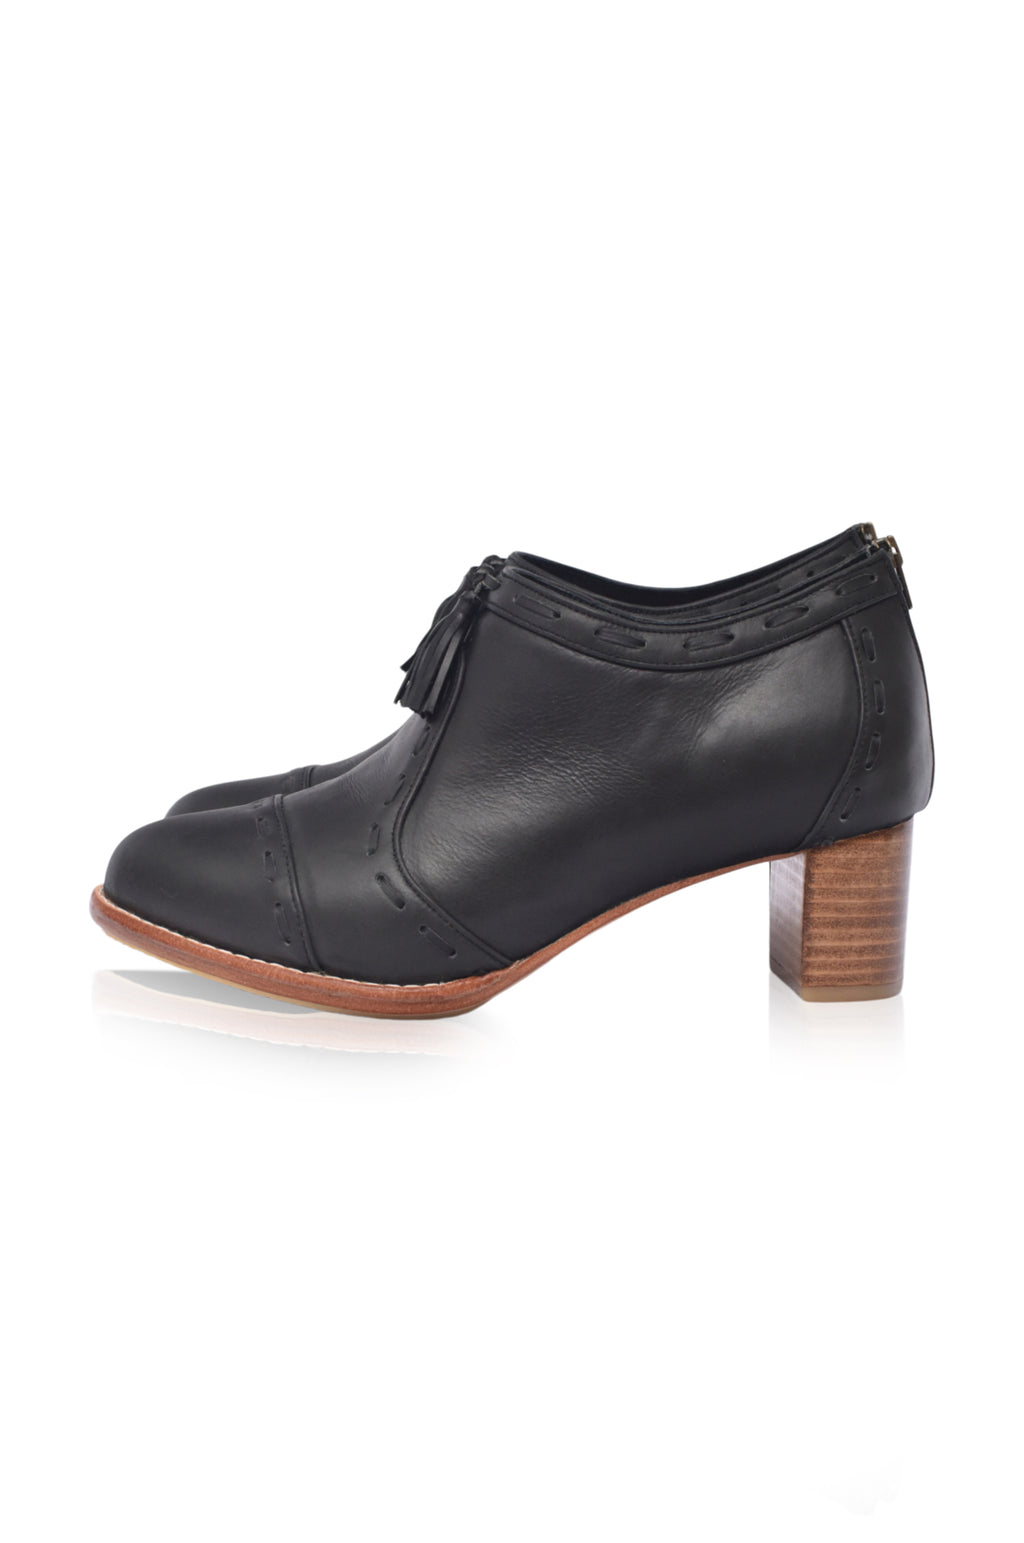 Sensational Leather Booties 5 cm Heels (Sz. 6.5)